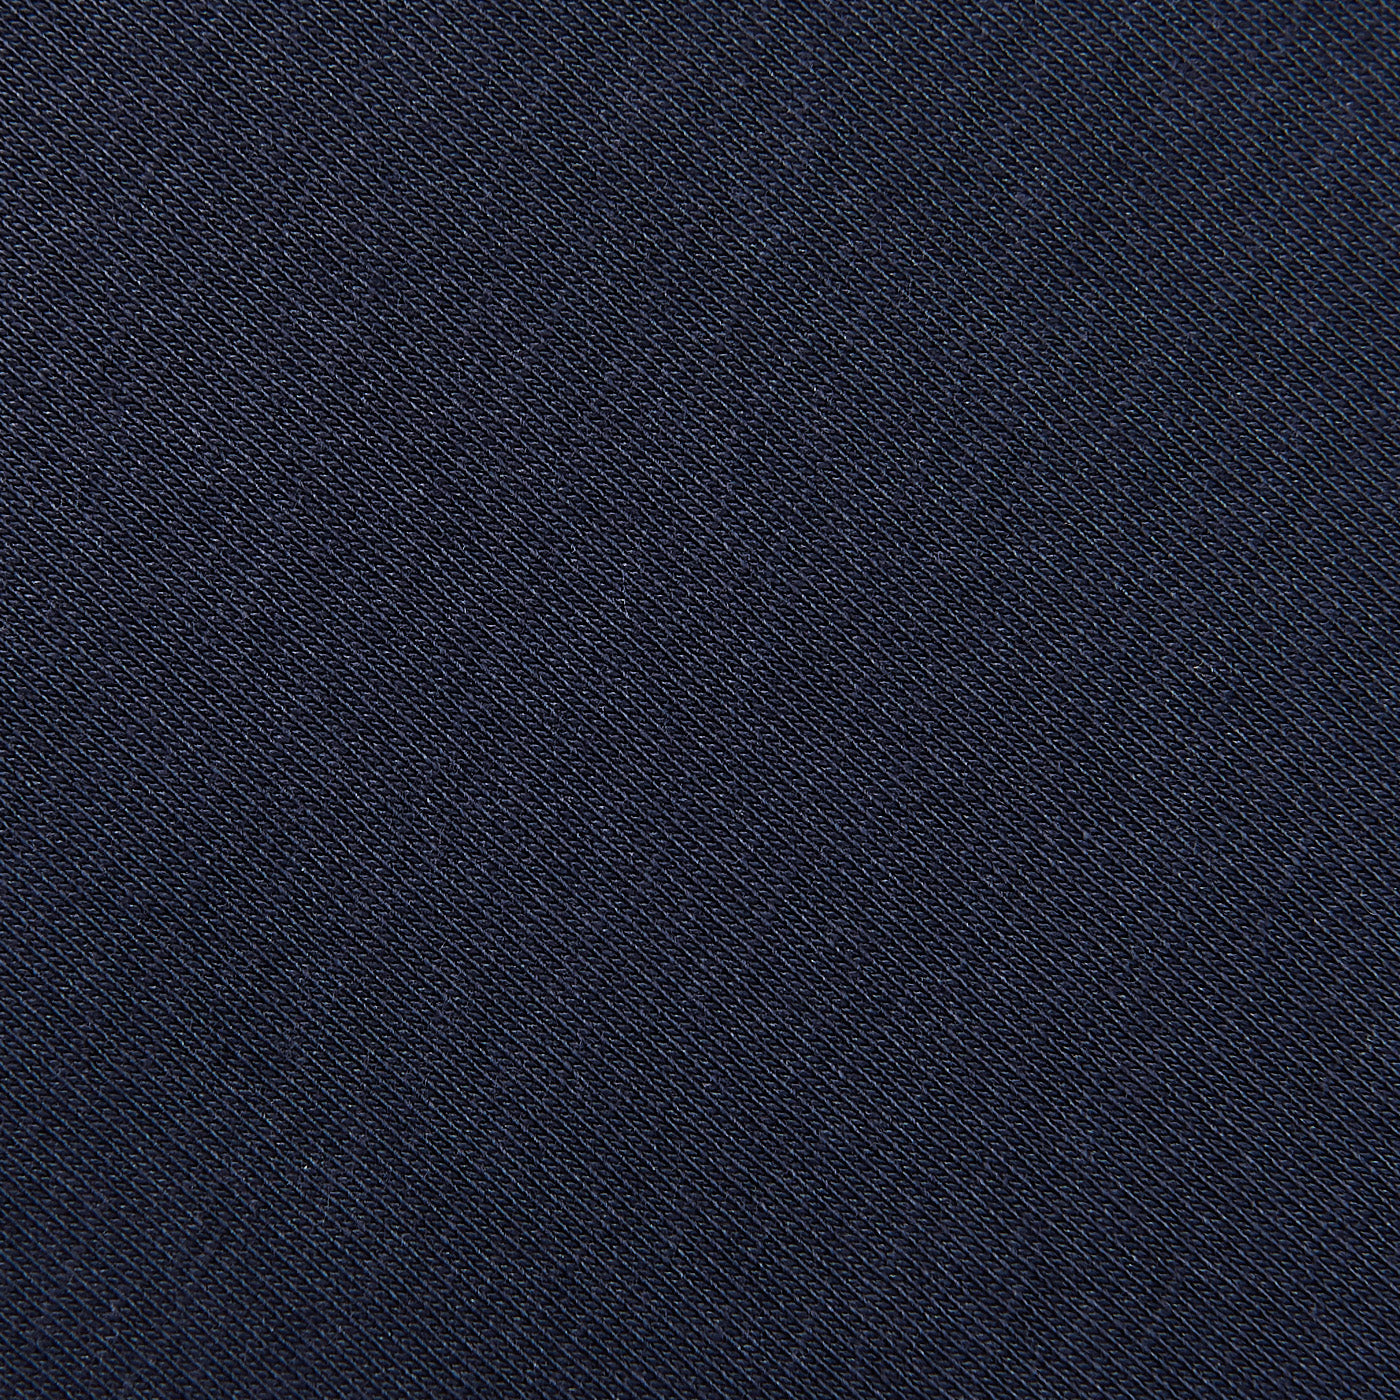 Sunspel Navy Blue Cotton Riviera Long Sleeve T-Shirt Fabric